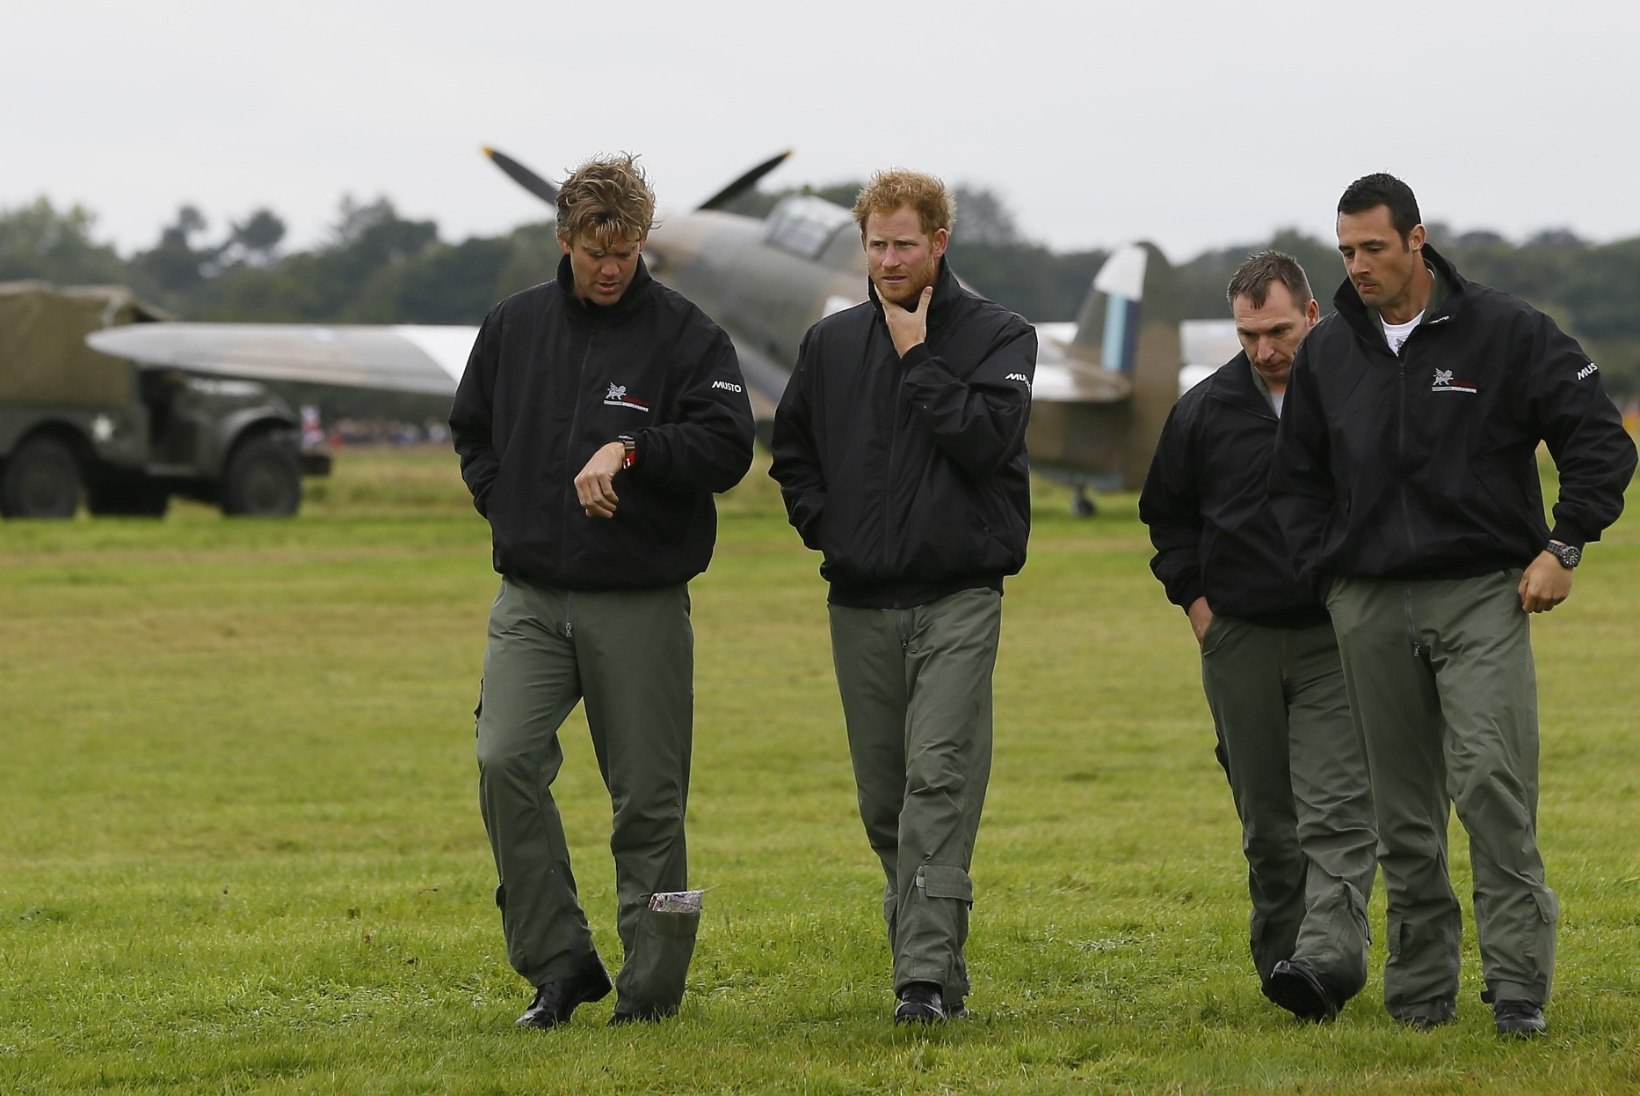 FOTOD | Palju õnne, prints Harry! Sünnipäevalaps mälestas Briti lendureid 